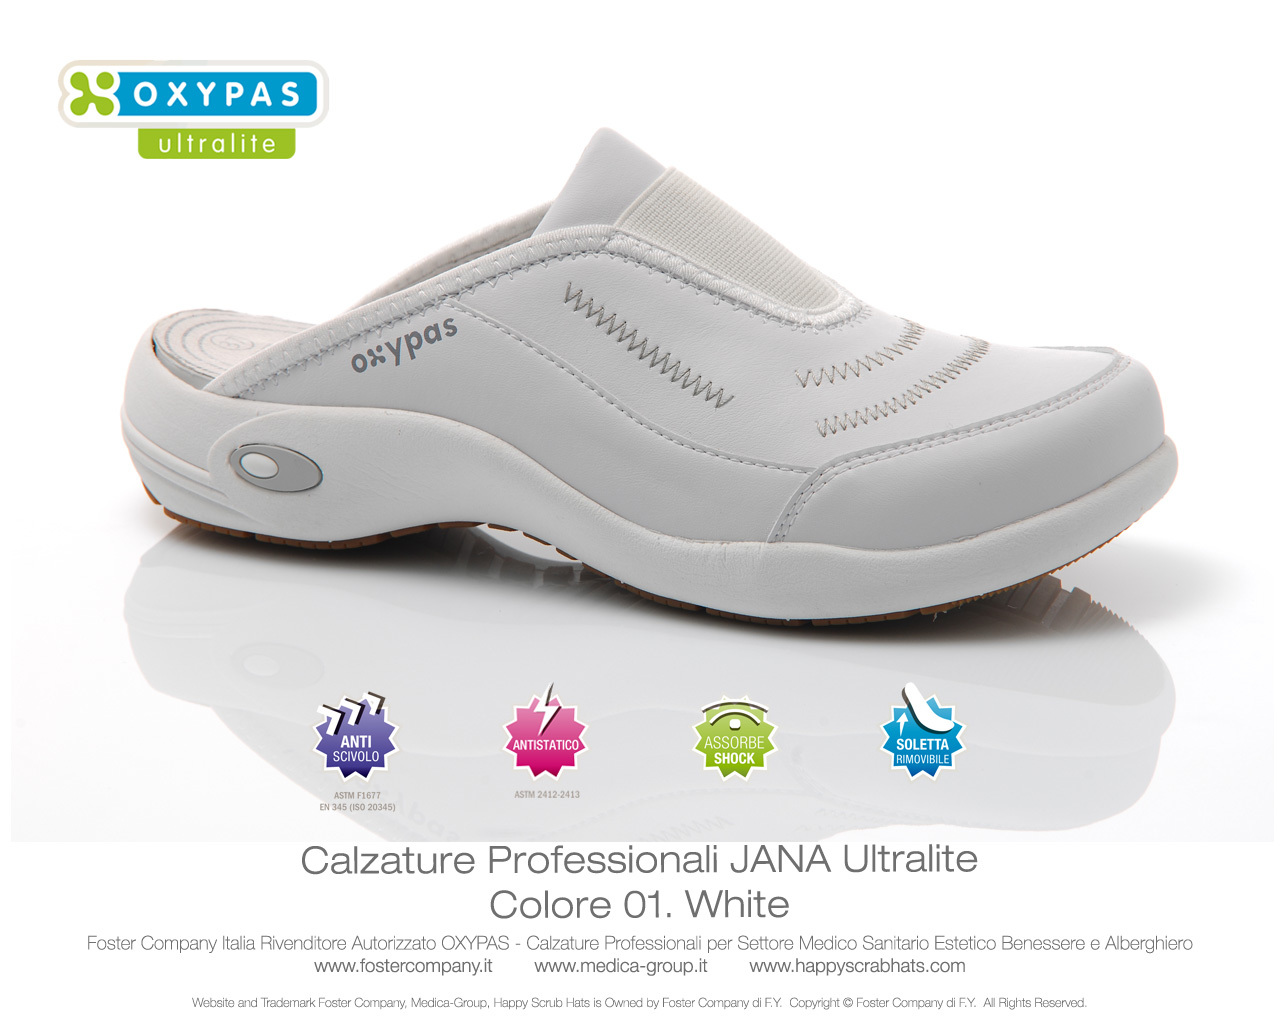 Calzature Professionali Oxypas JANA Colore 01. White - 02. Black - FINE  SERIE